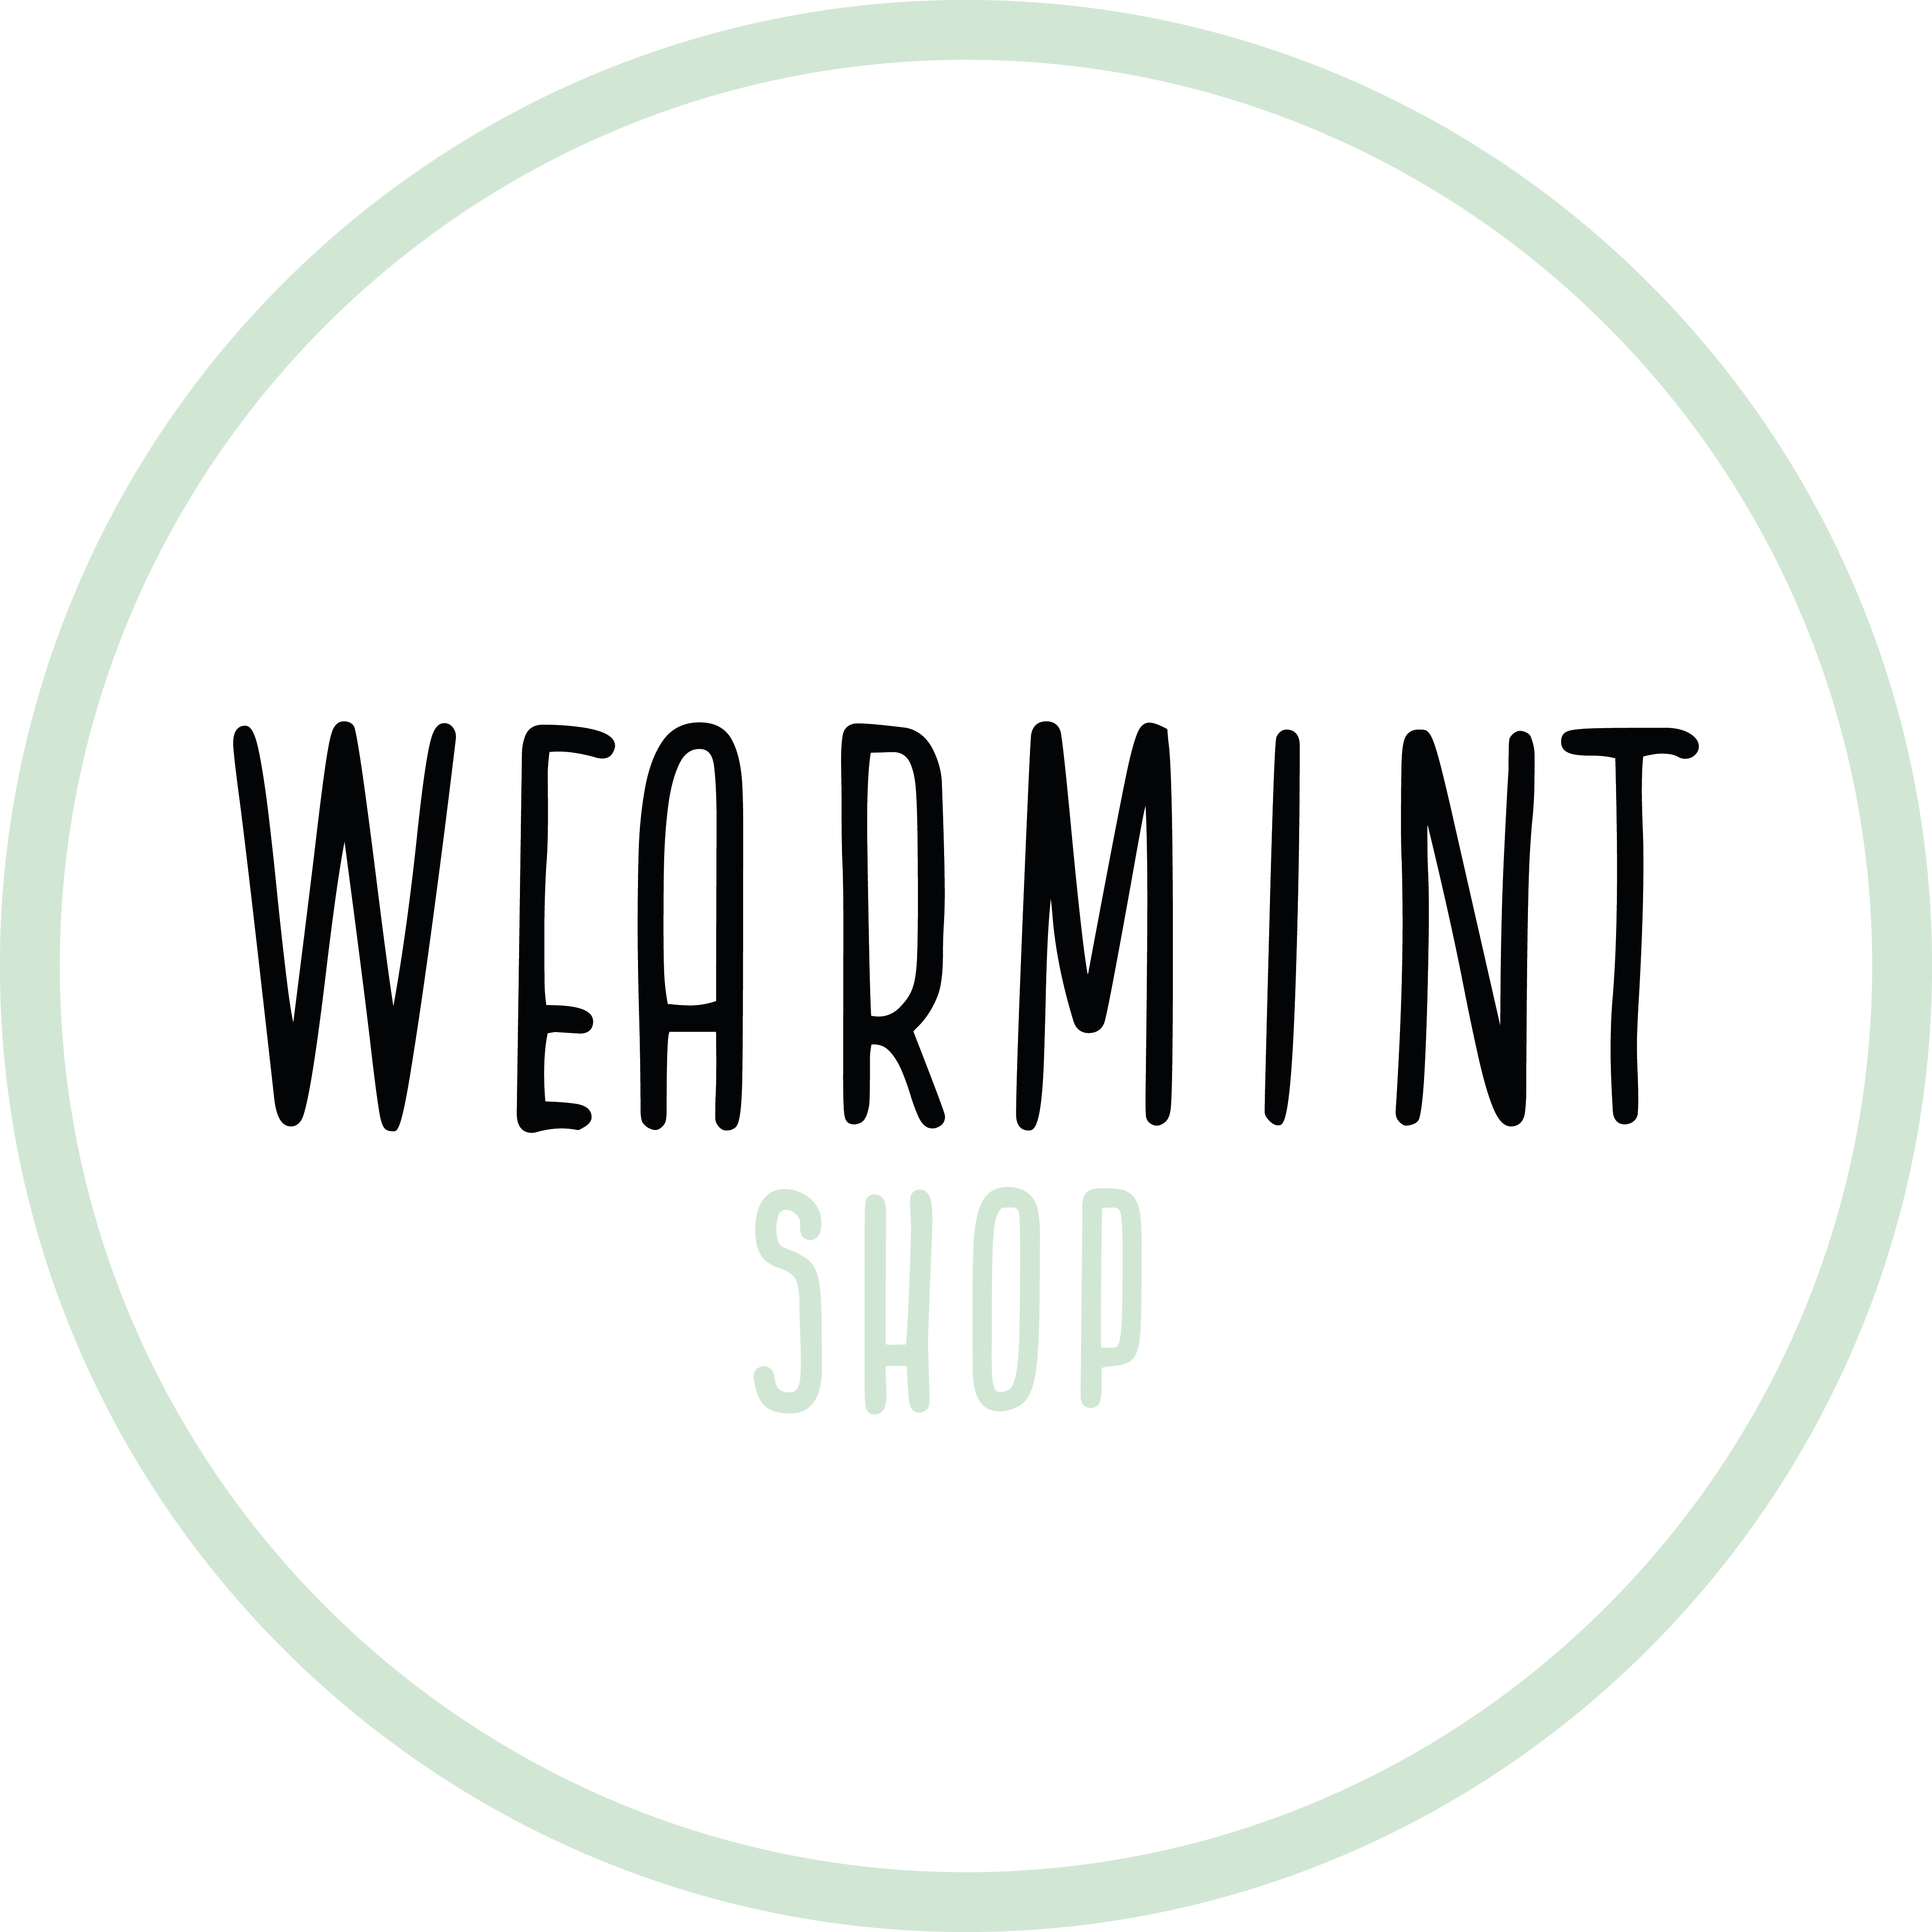 Wearmint Shop